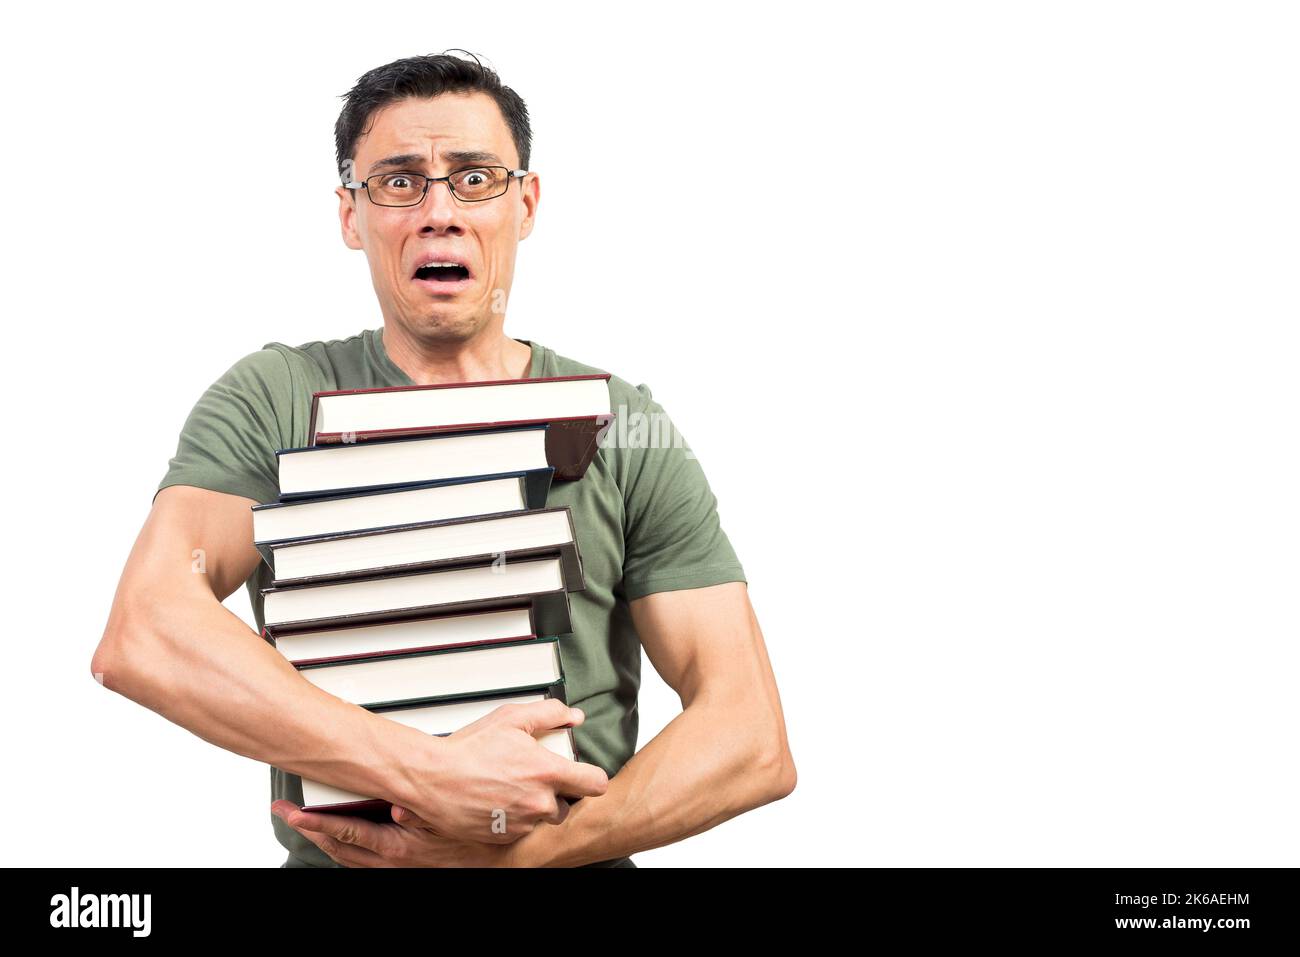 Un homme effrayant élève avec des livres regardant l'appareil photo Banque D'Images